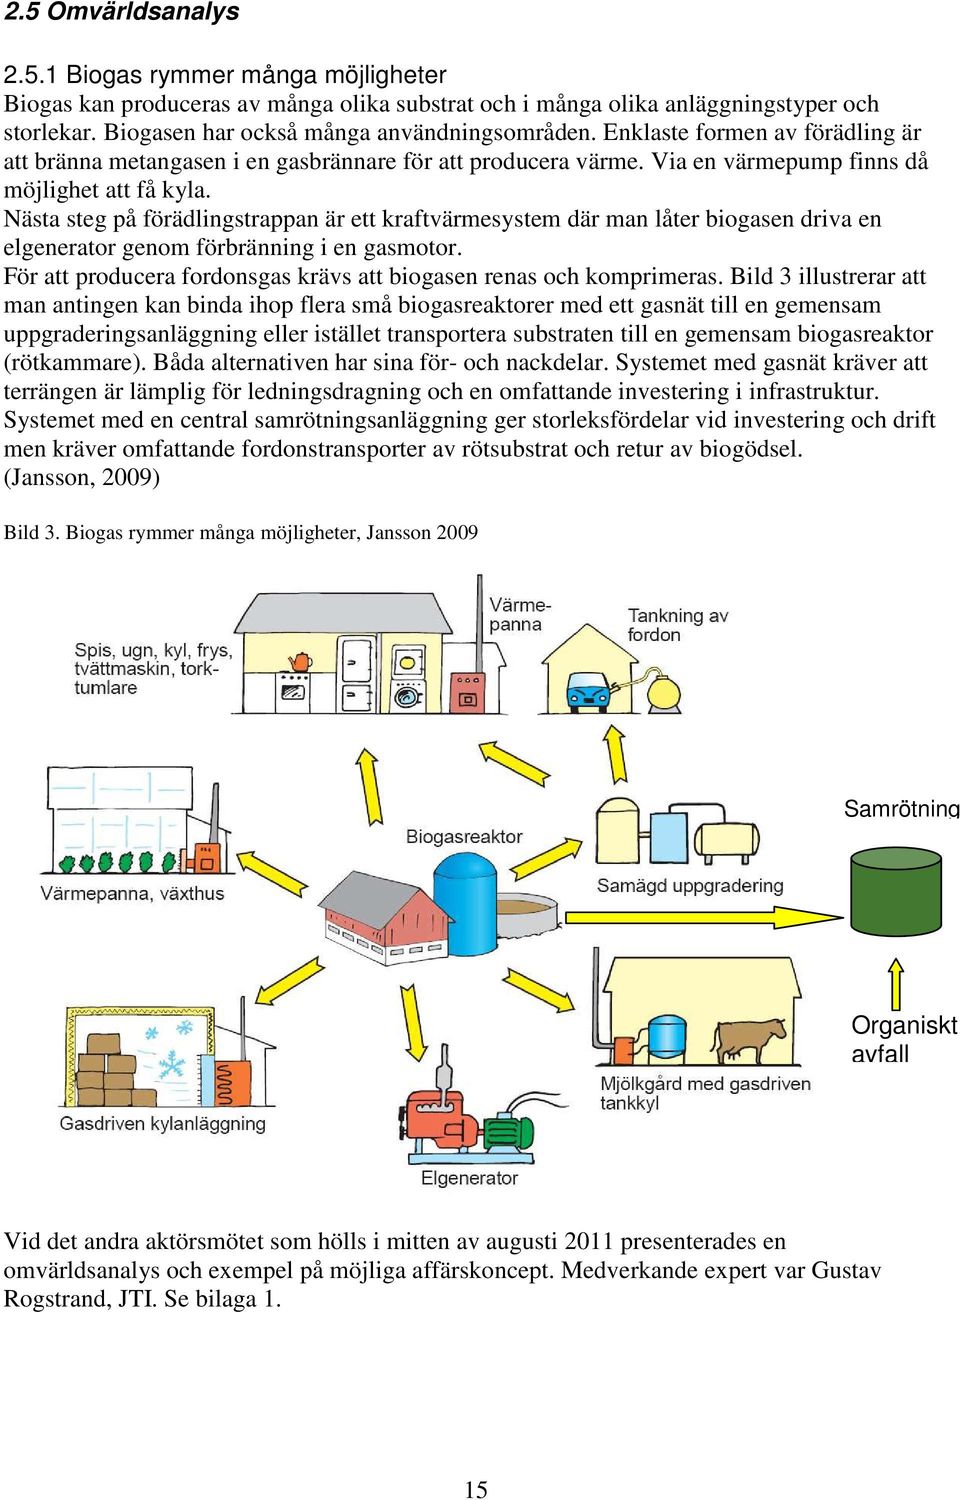 Nästa steg på förädlingstrappan är ett kraftvärmesystem där man låter biogasen driva en elgenerator genom förbränning i en gasmotor.